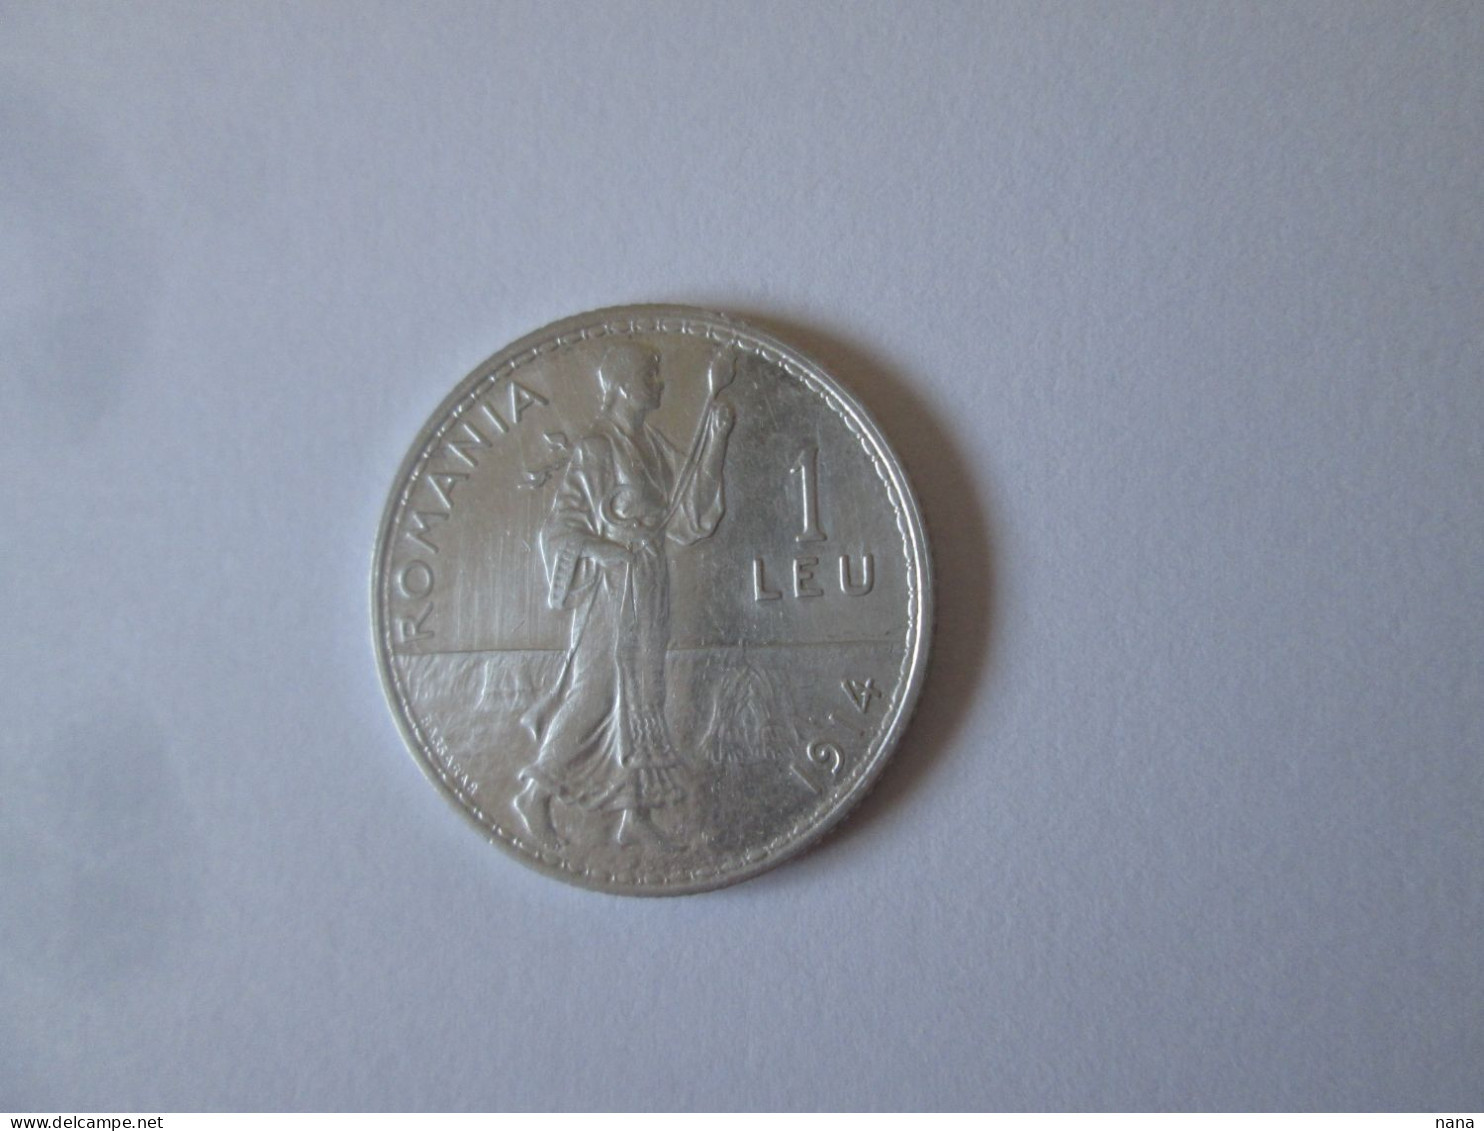 Roumanie 1 Leu 1914 Argent Tres Belle Piece/Romania 1 Leu 1914 Silver Very Nice Coin - Roumanie